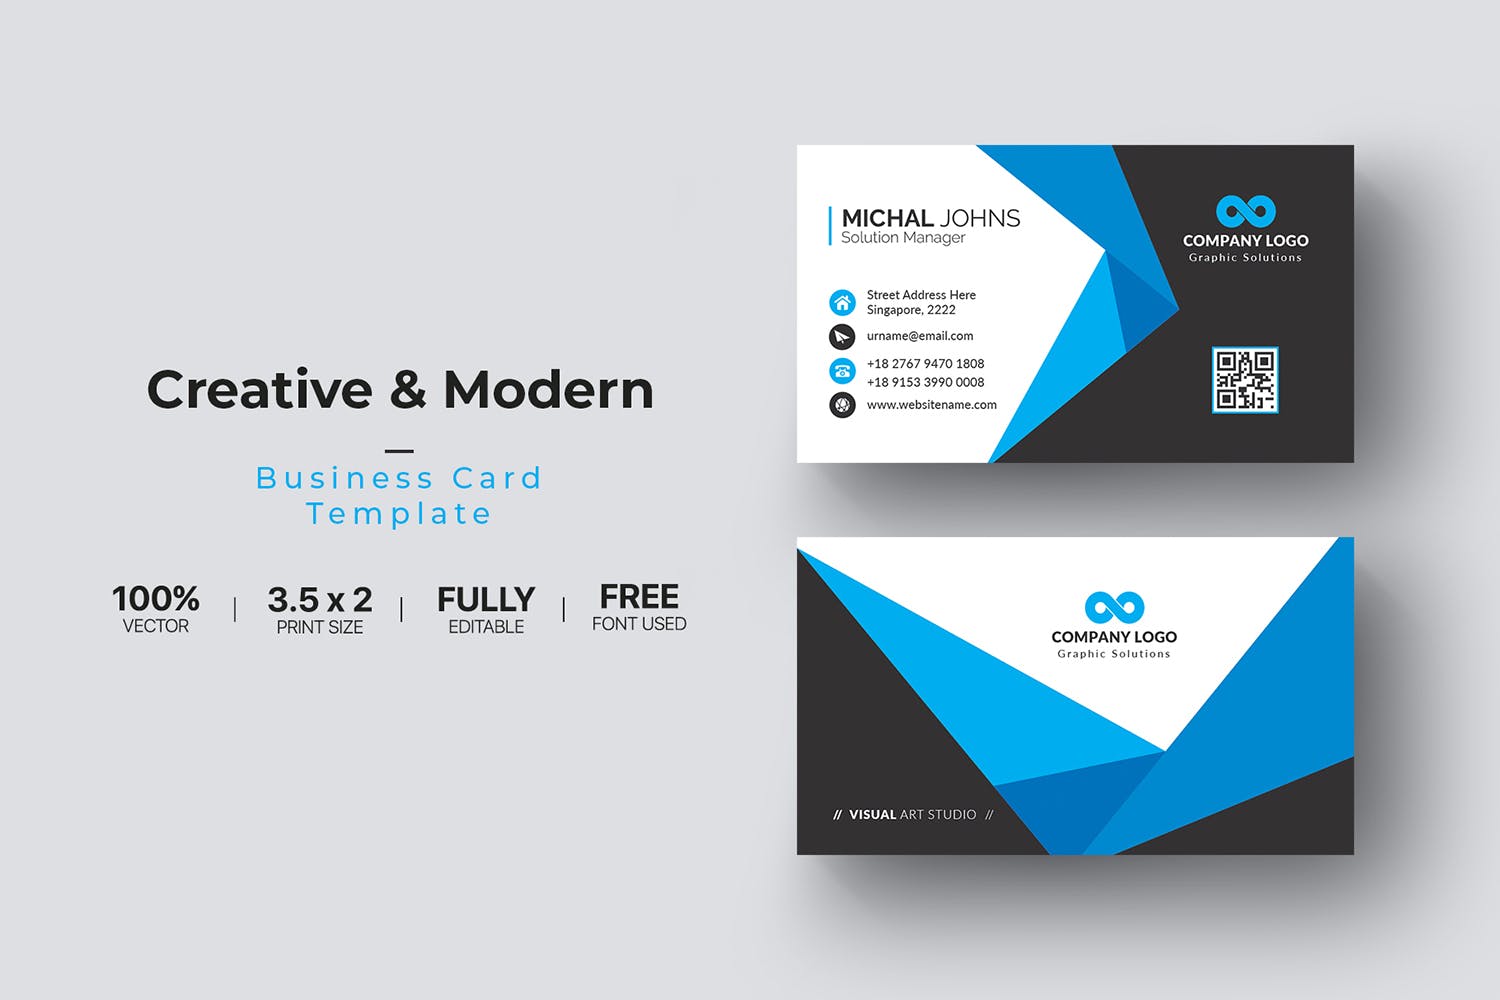 折纸图形设计风格企业名片模板 Business Card插图